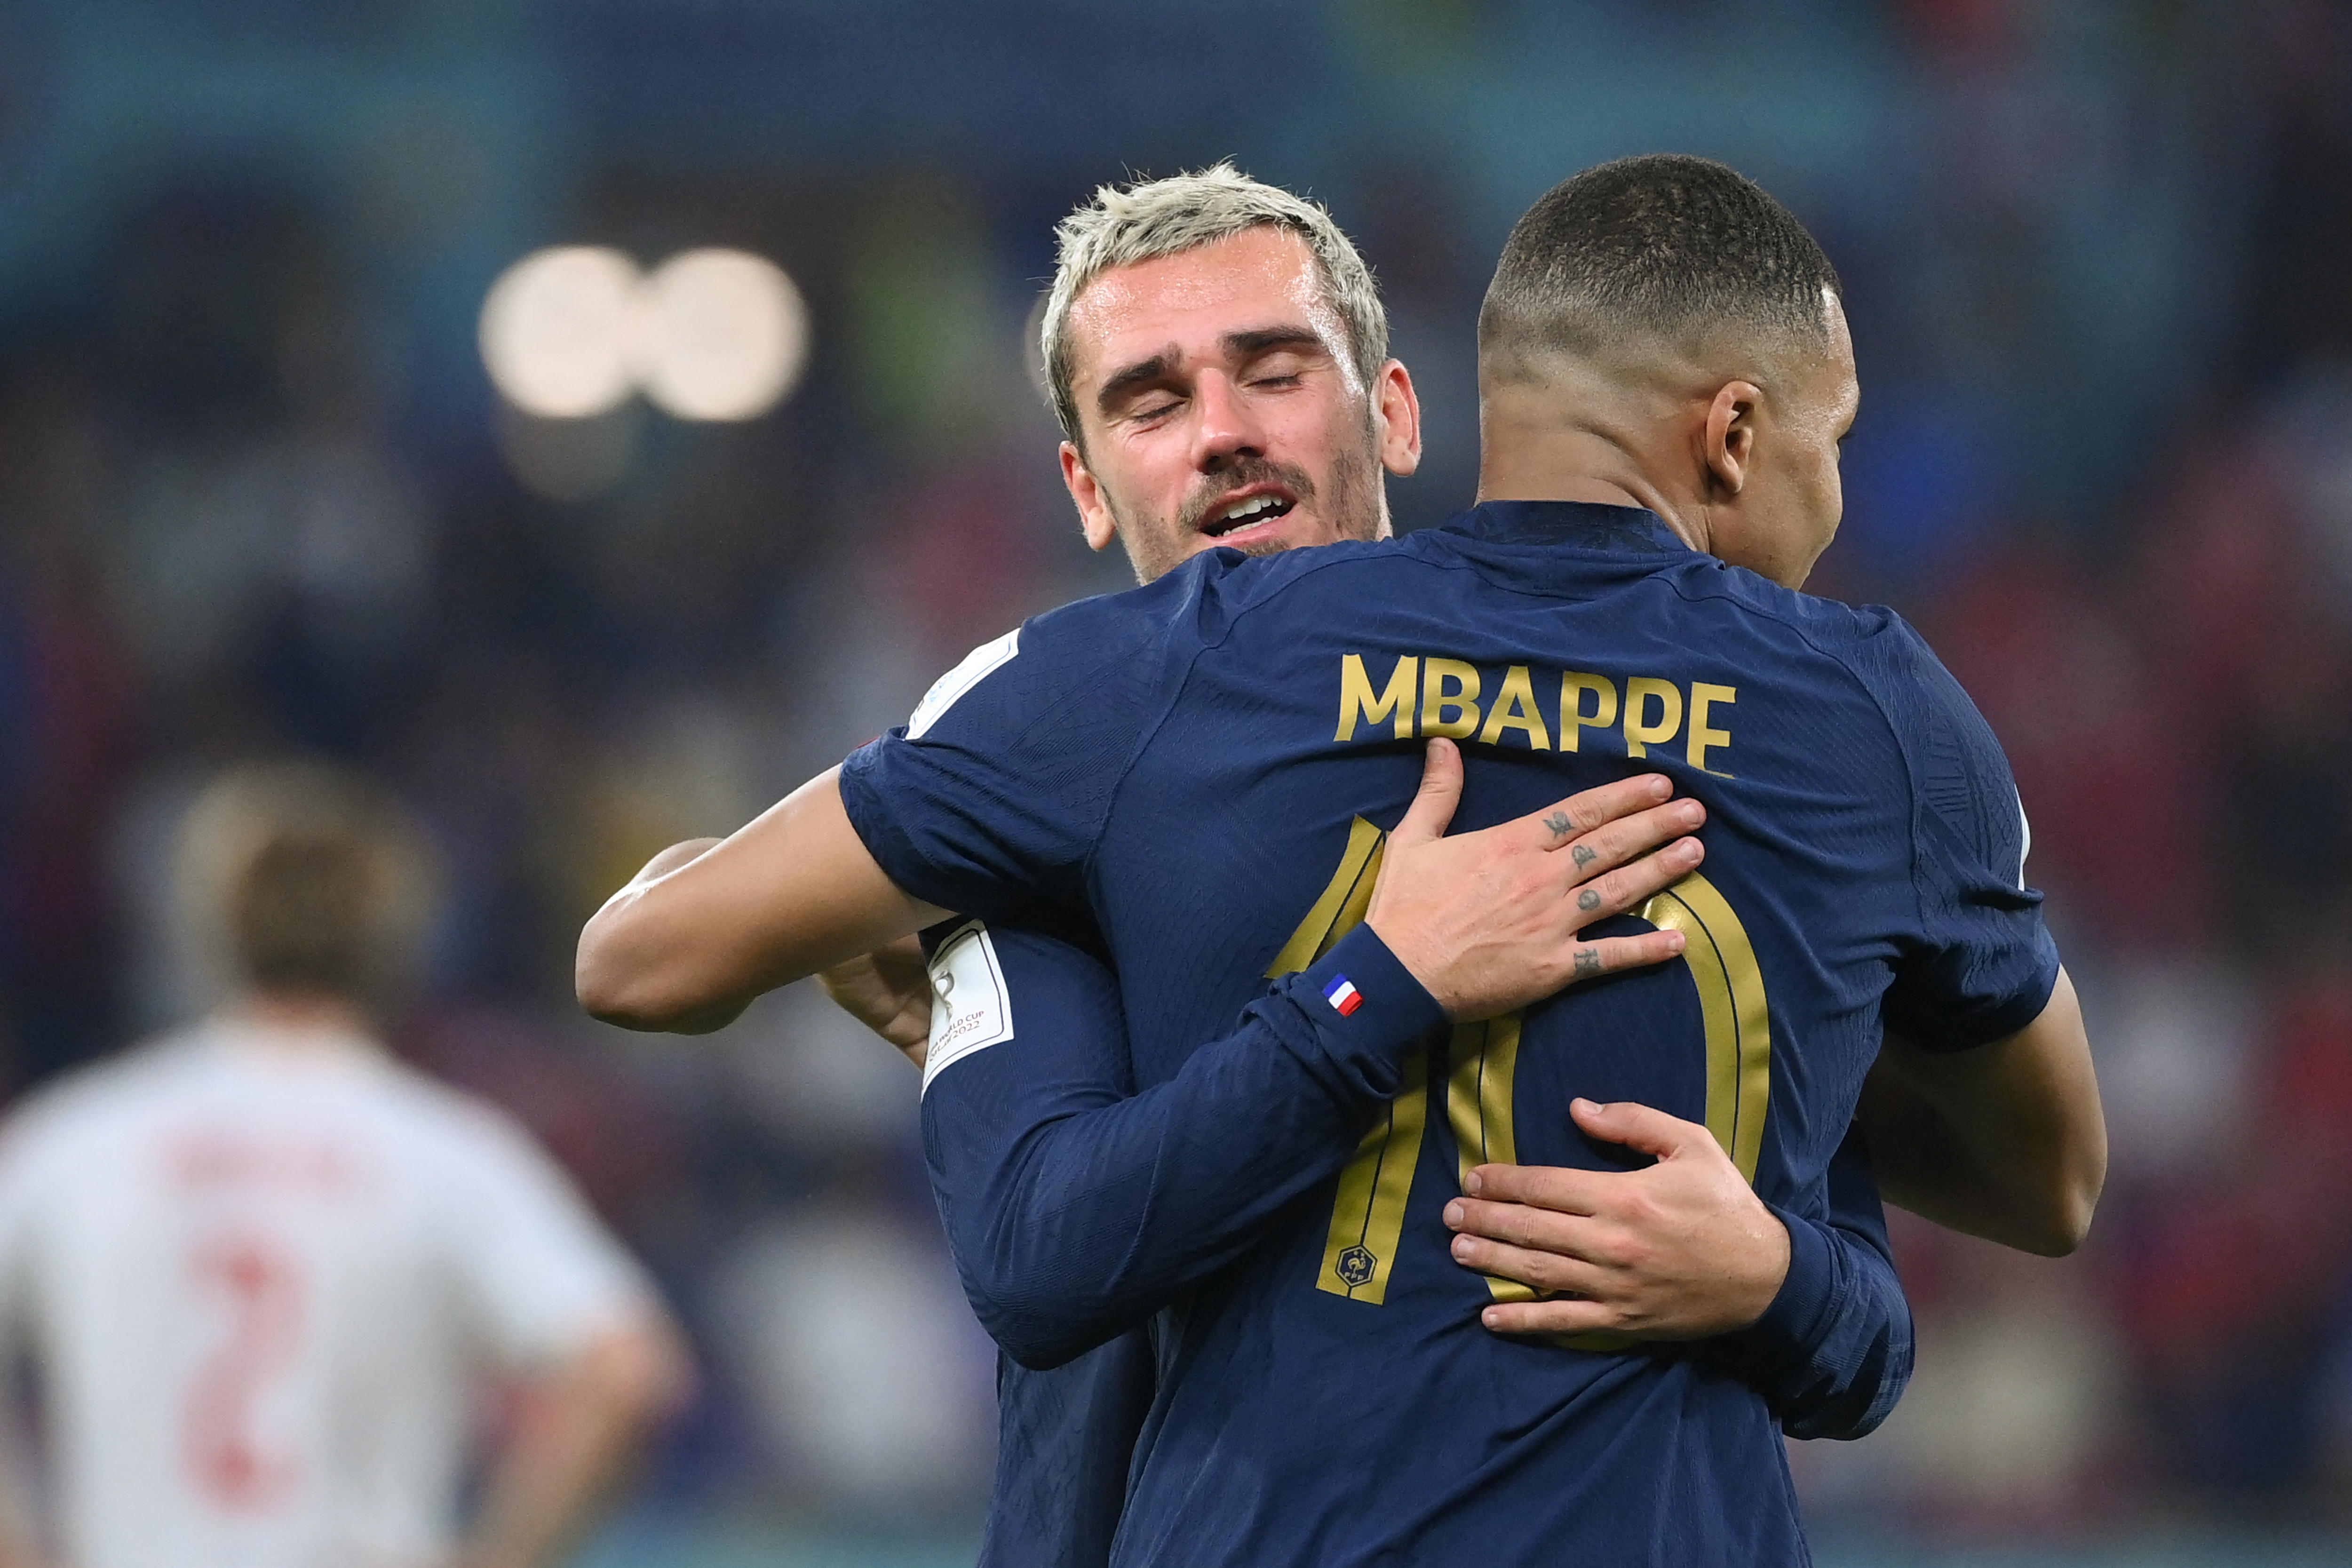 Escolha de Mbappé como novo capitão da França incomoda Griezmann